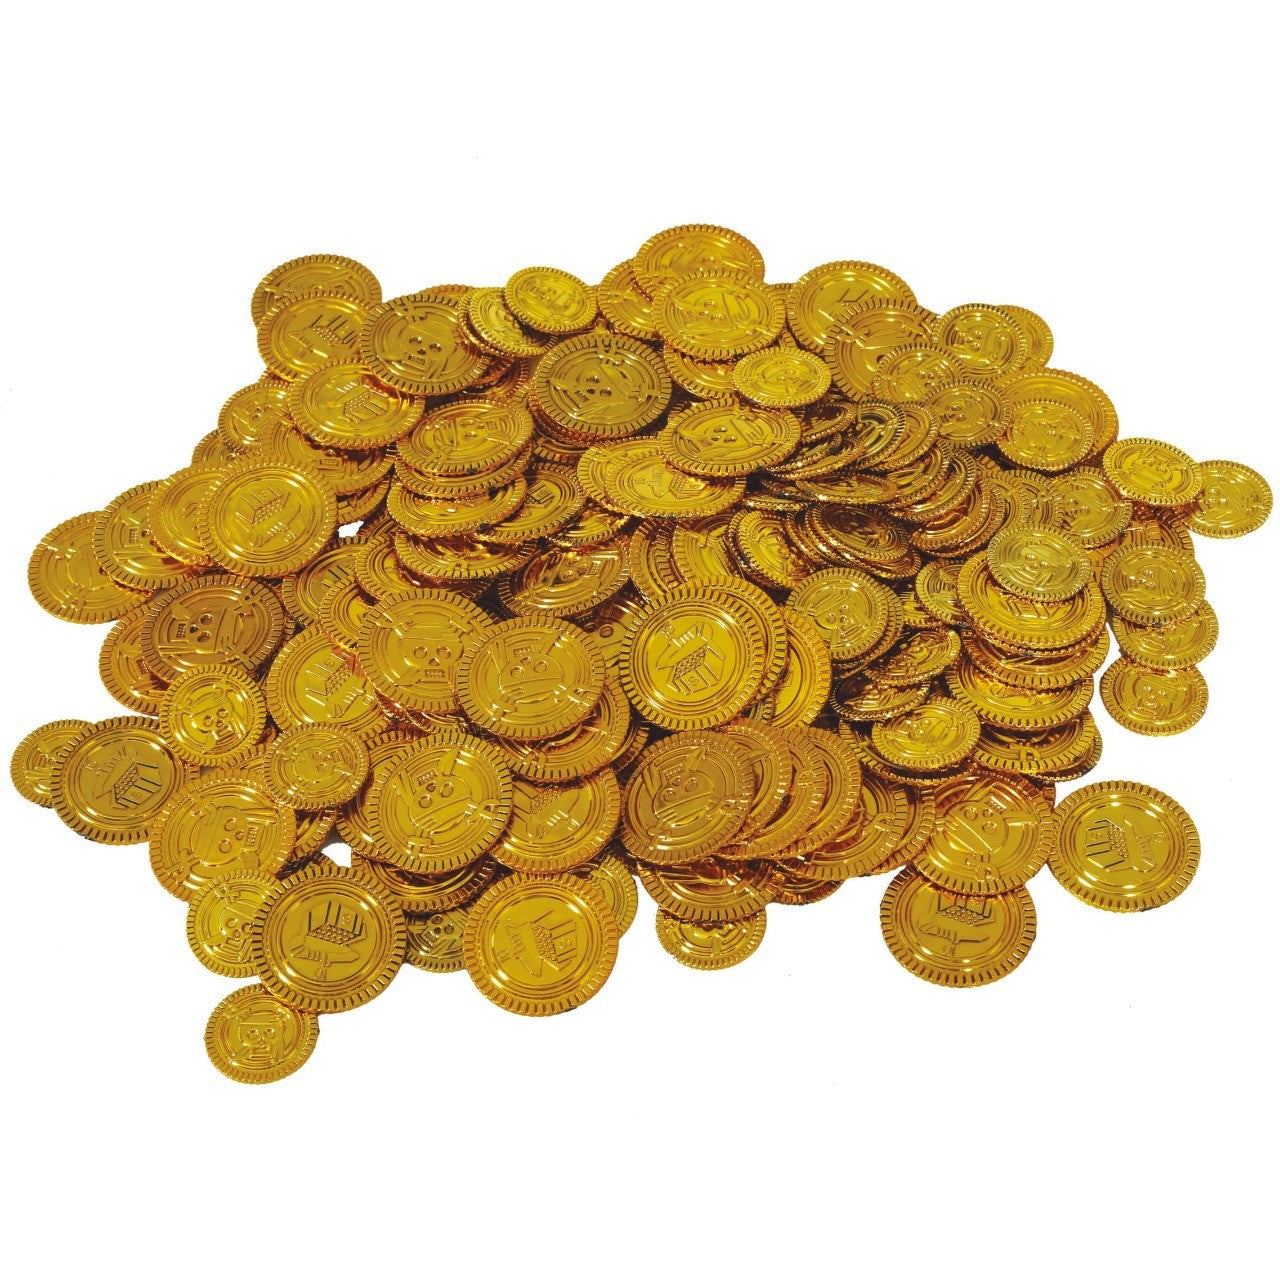 25 Piraten Münzen